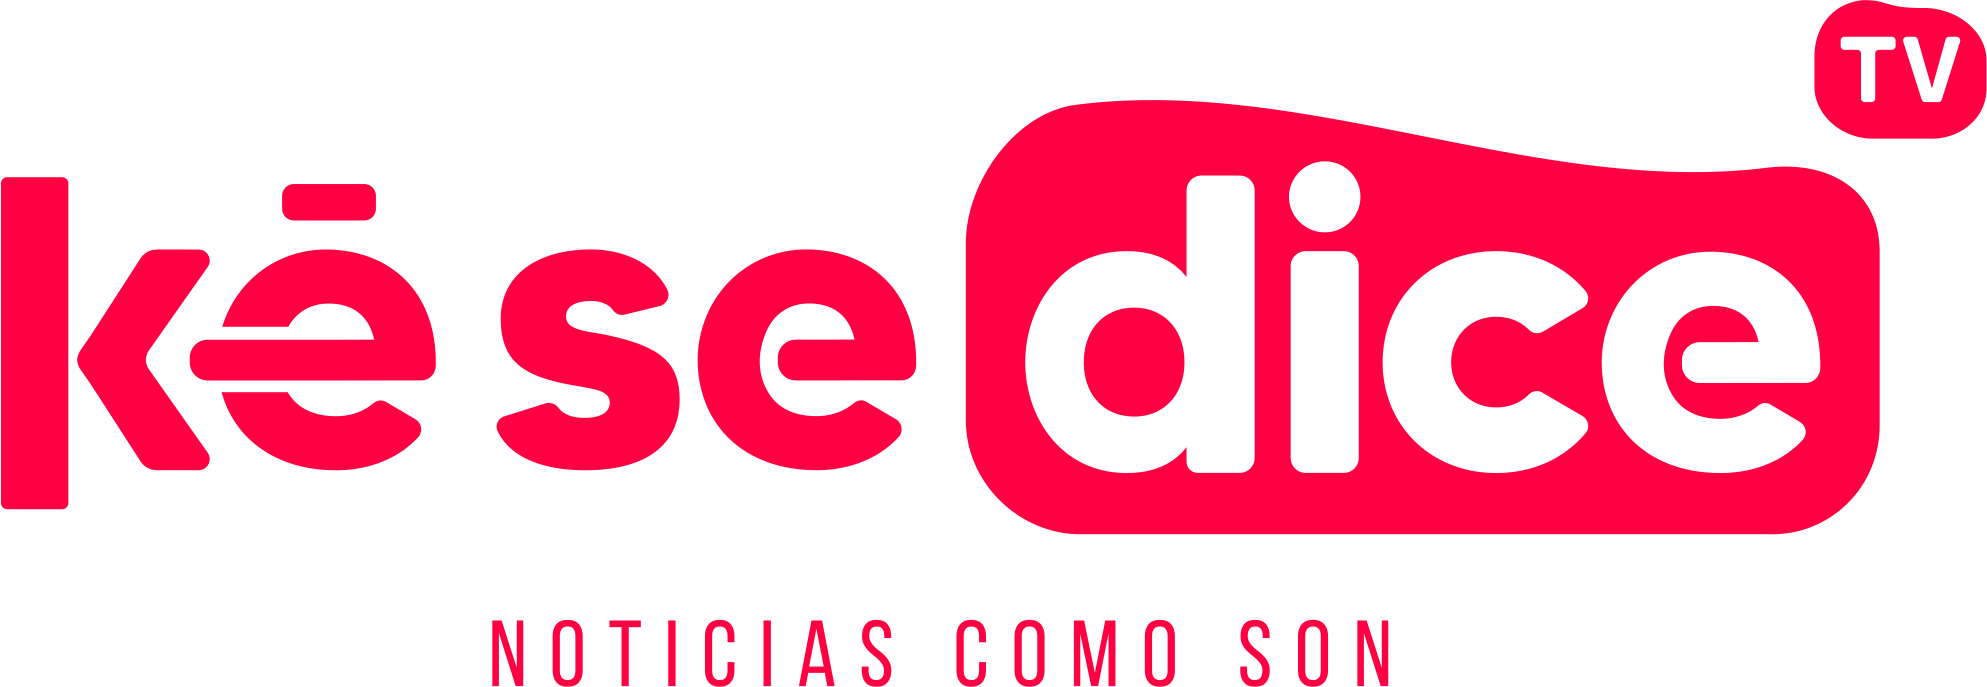 kesedice tv - logo